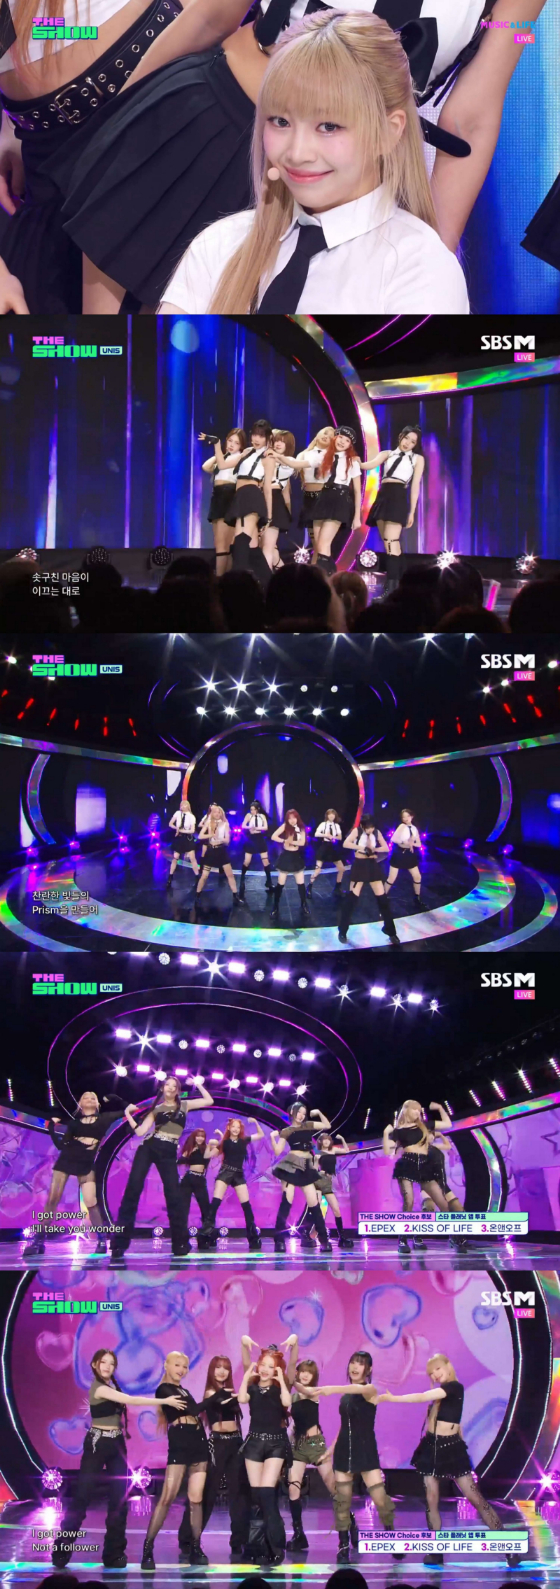 SBS M, SBS FiL '더쇼'에 출연한 유니스./사진=SBS M, SBS FiL '더쇼' 영상 캡처